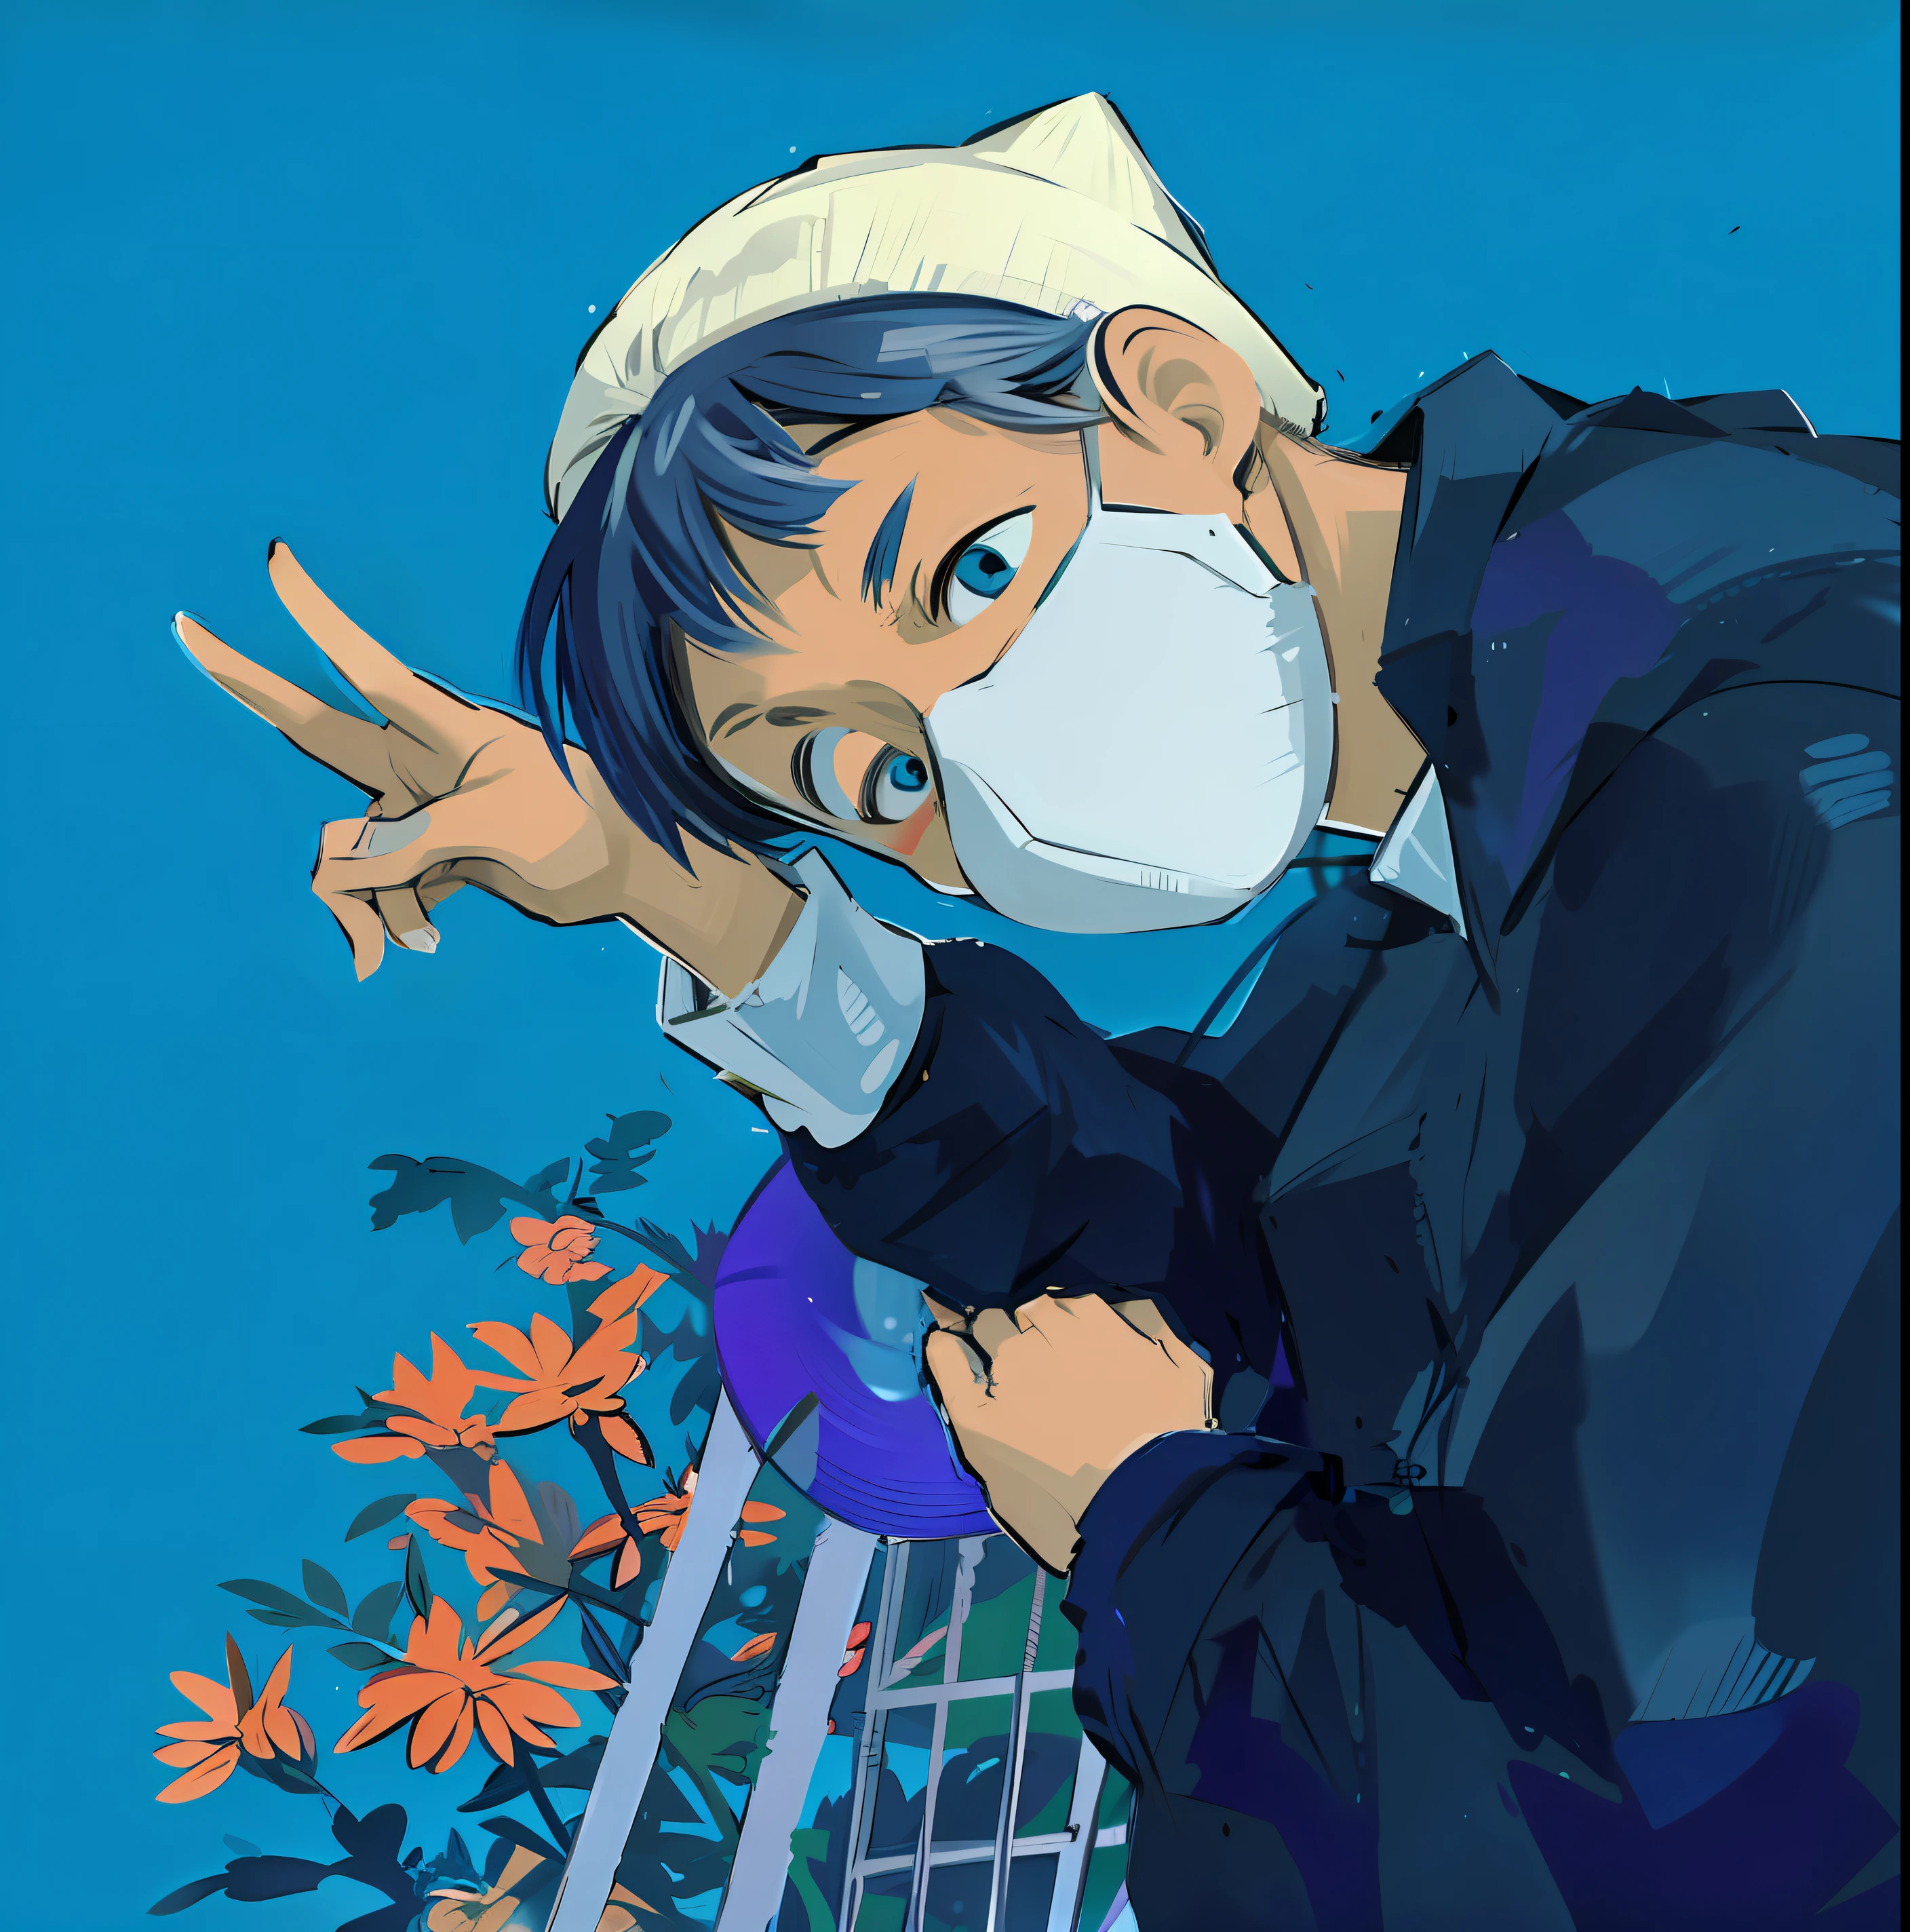 Anime Junge mit Maske und Hut, Lob Kunststil, Kunstwerke im Guviz-Stil, Hochwertiges Fanart, Anime-Stimmung, Animeästhetisch, 9 0 s Anime-Ästhetik, im Anime-Stil, nur Anime-Stil, offizielles Fanart, Lofi-Hip-Hop, im Anime-Stil, 9 0 s Anime-Kunststil, shinji, persönliches Profilbild